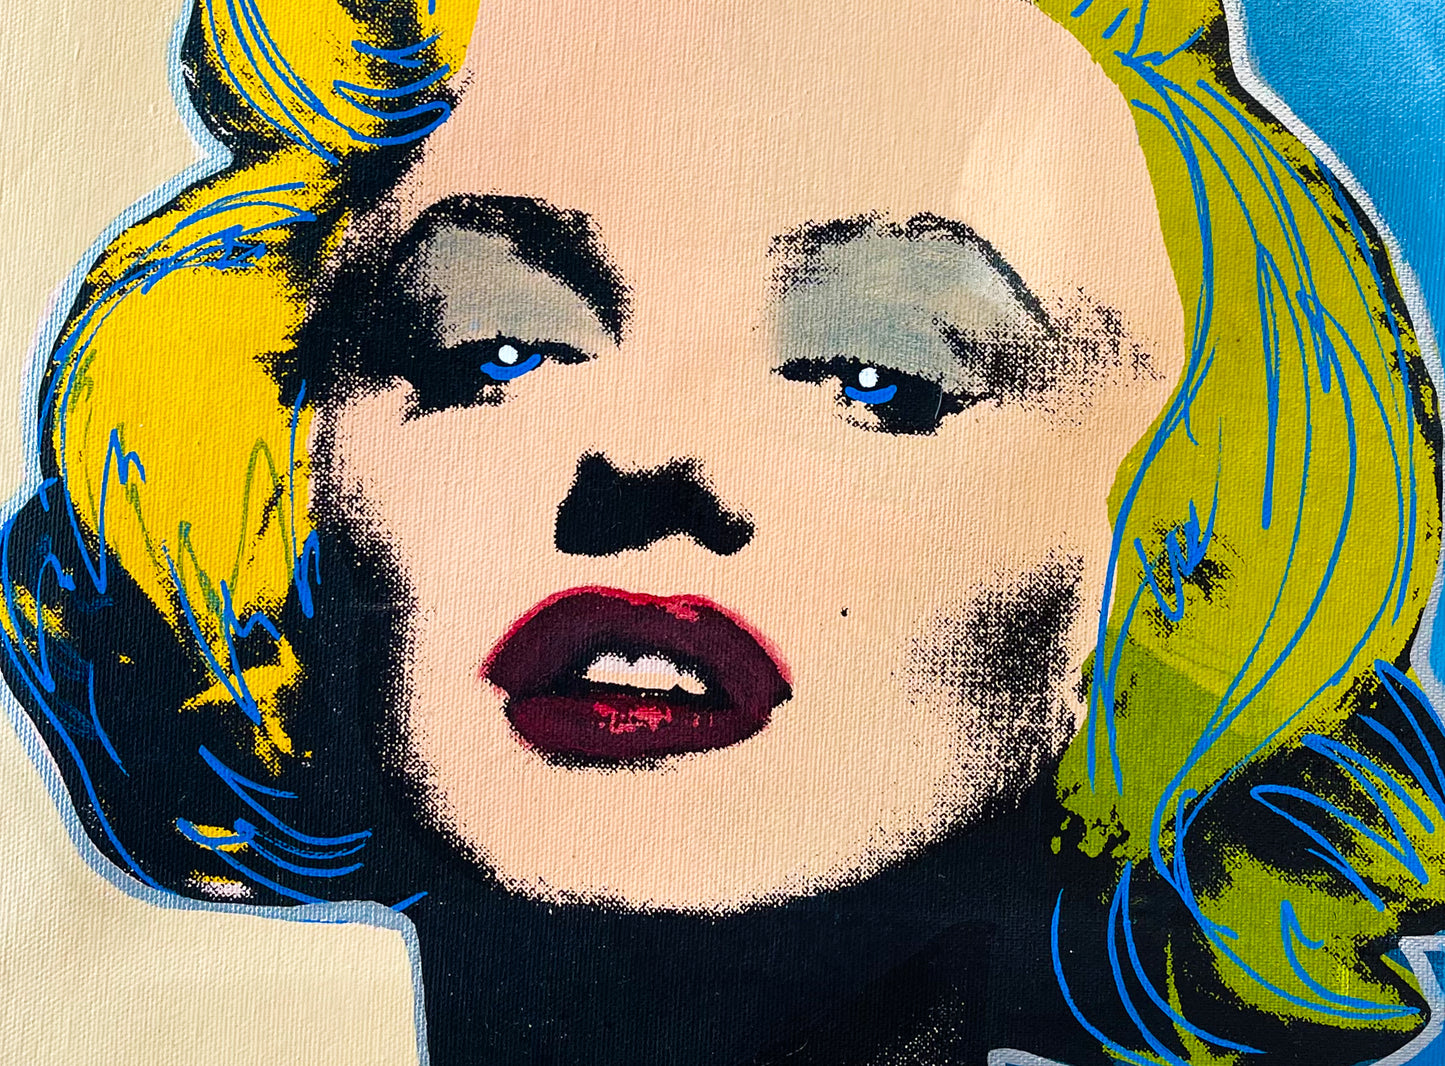 Original Signed Steve Kaufman Multi Media on Canvas Painting of Marilyn Monroe #33/50